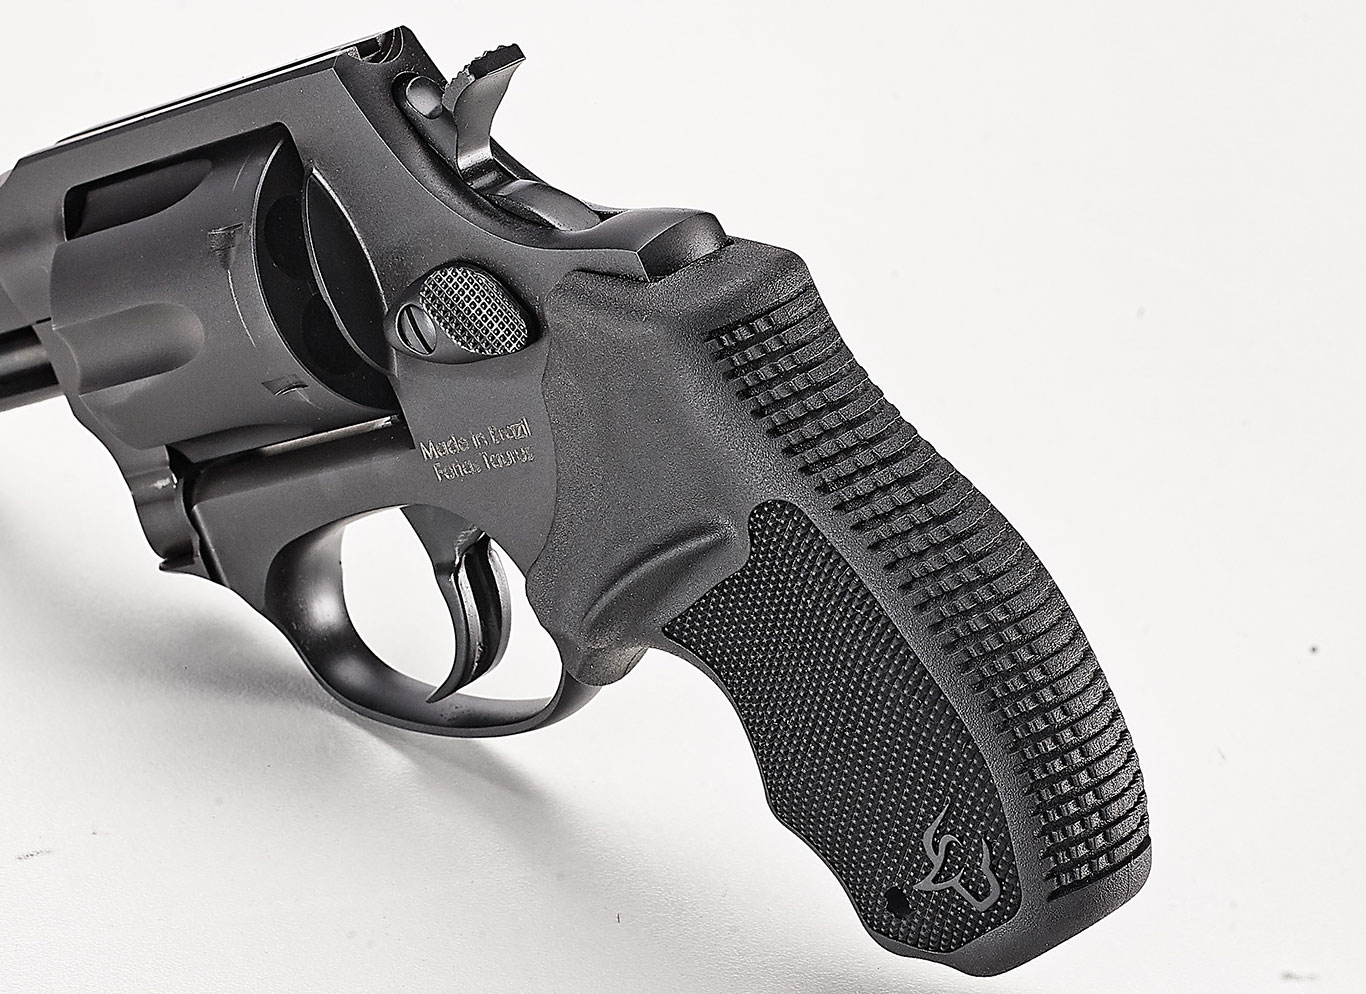 Taurus-856-.38-Special-Revolver-Grip